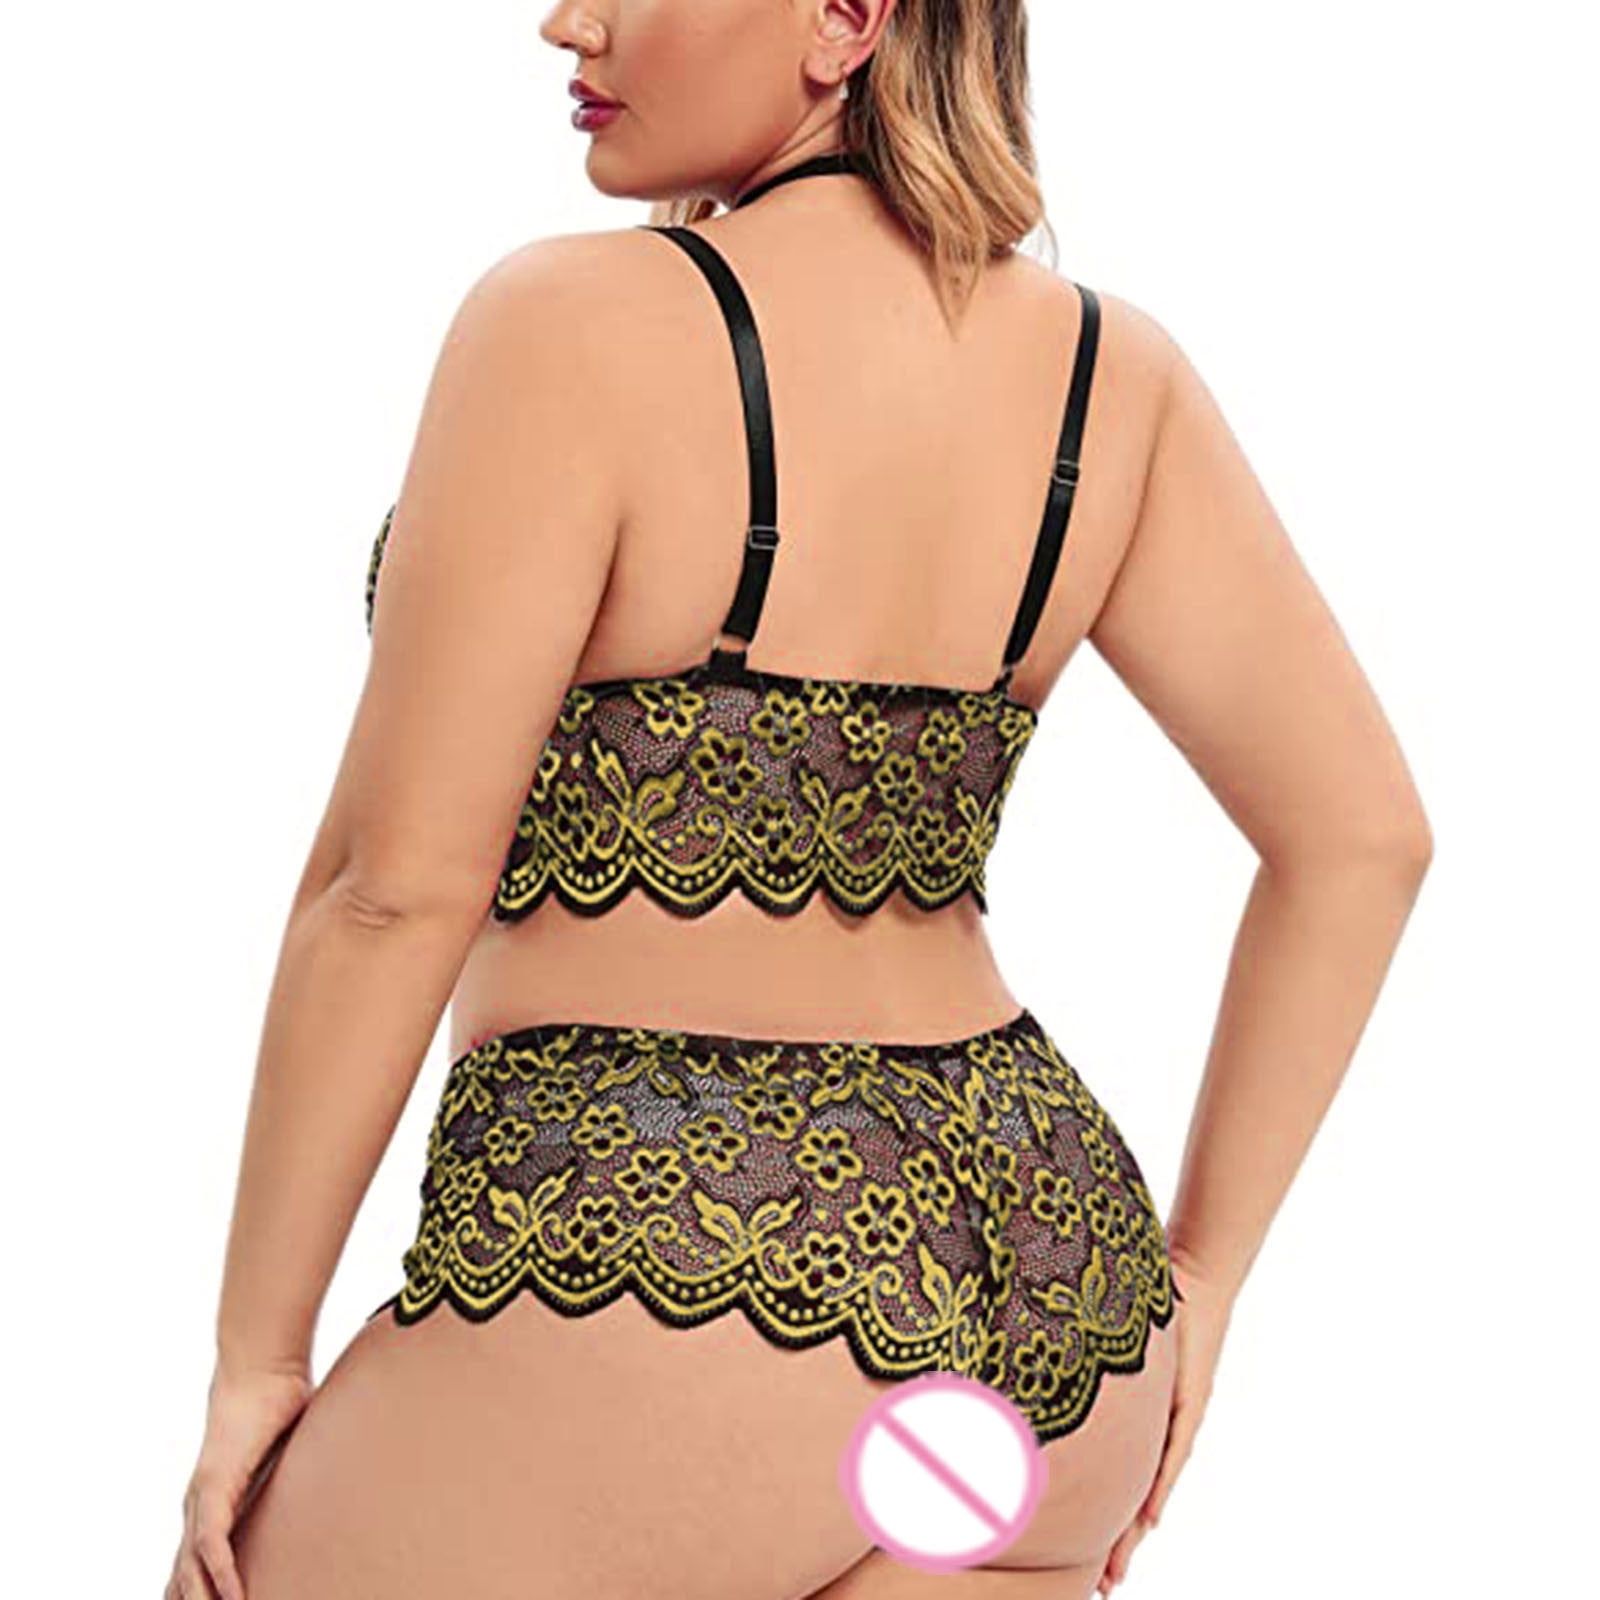 Buy Worlds Largest Bra Size ZZZZ Cup 36 Womens Underwear s Boob Joke Gag  Gift Online at desertcartNorway